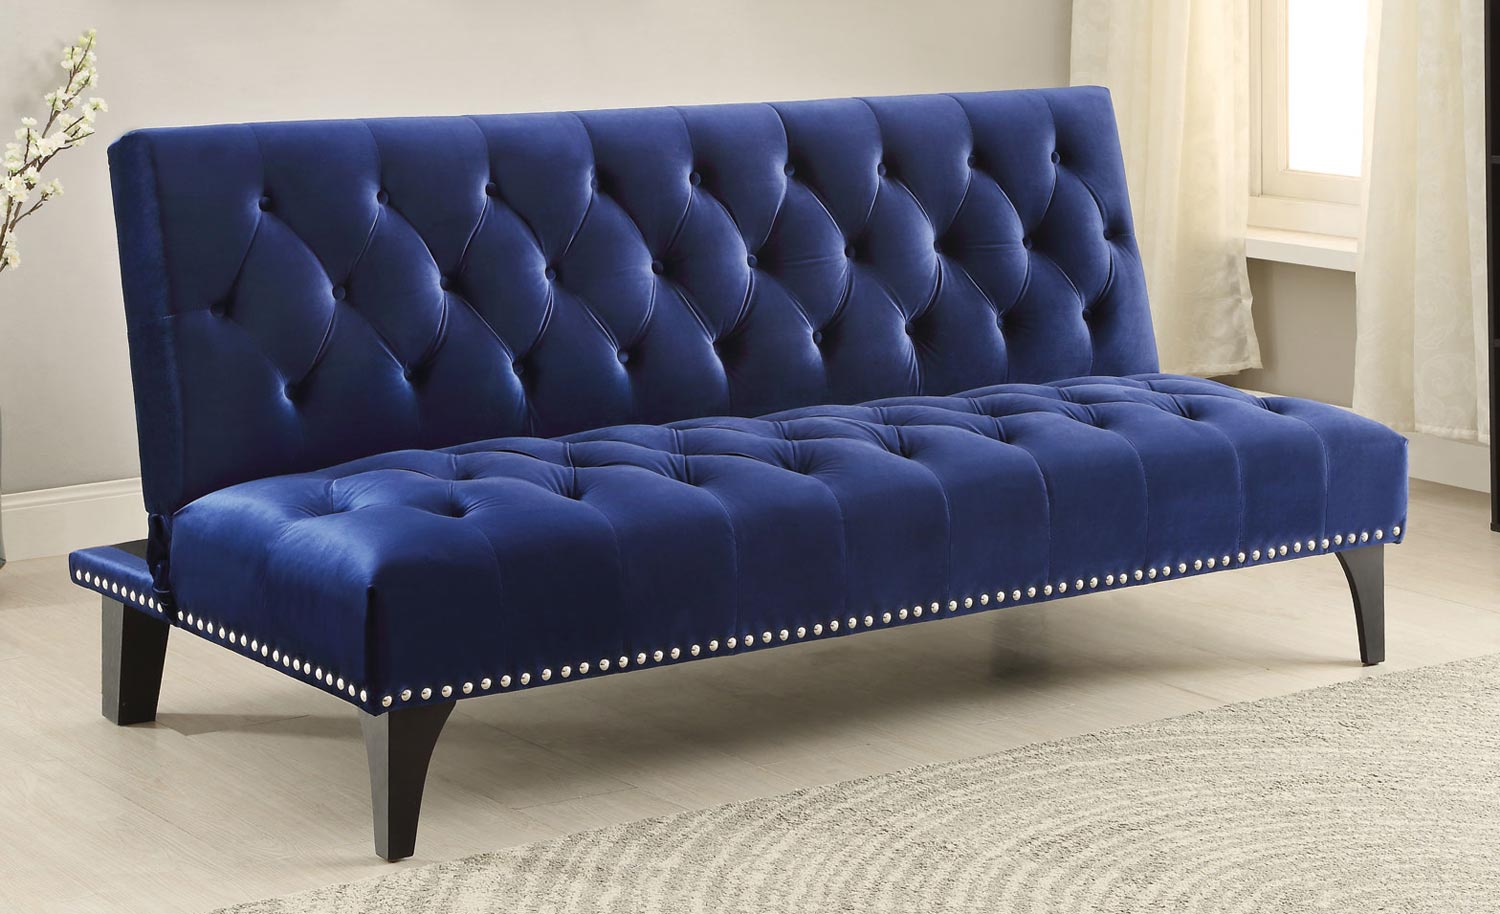 Coaster 500097 Sofa Bed - Royal Blue